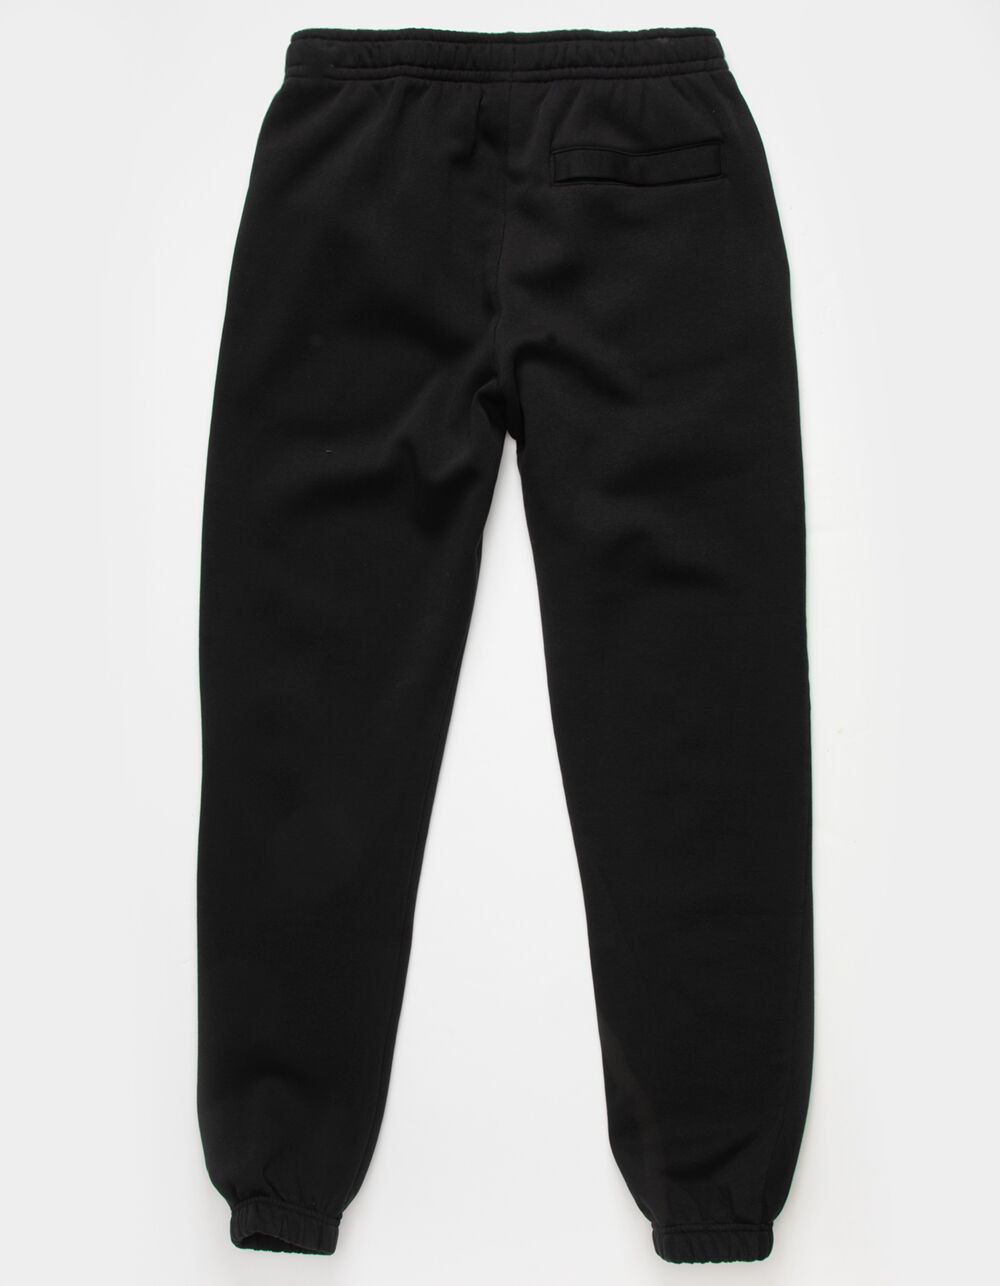 NIKE Sportswear Club Fleece Mens Sweatpants - BLACK, Tillys